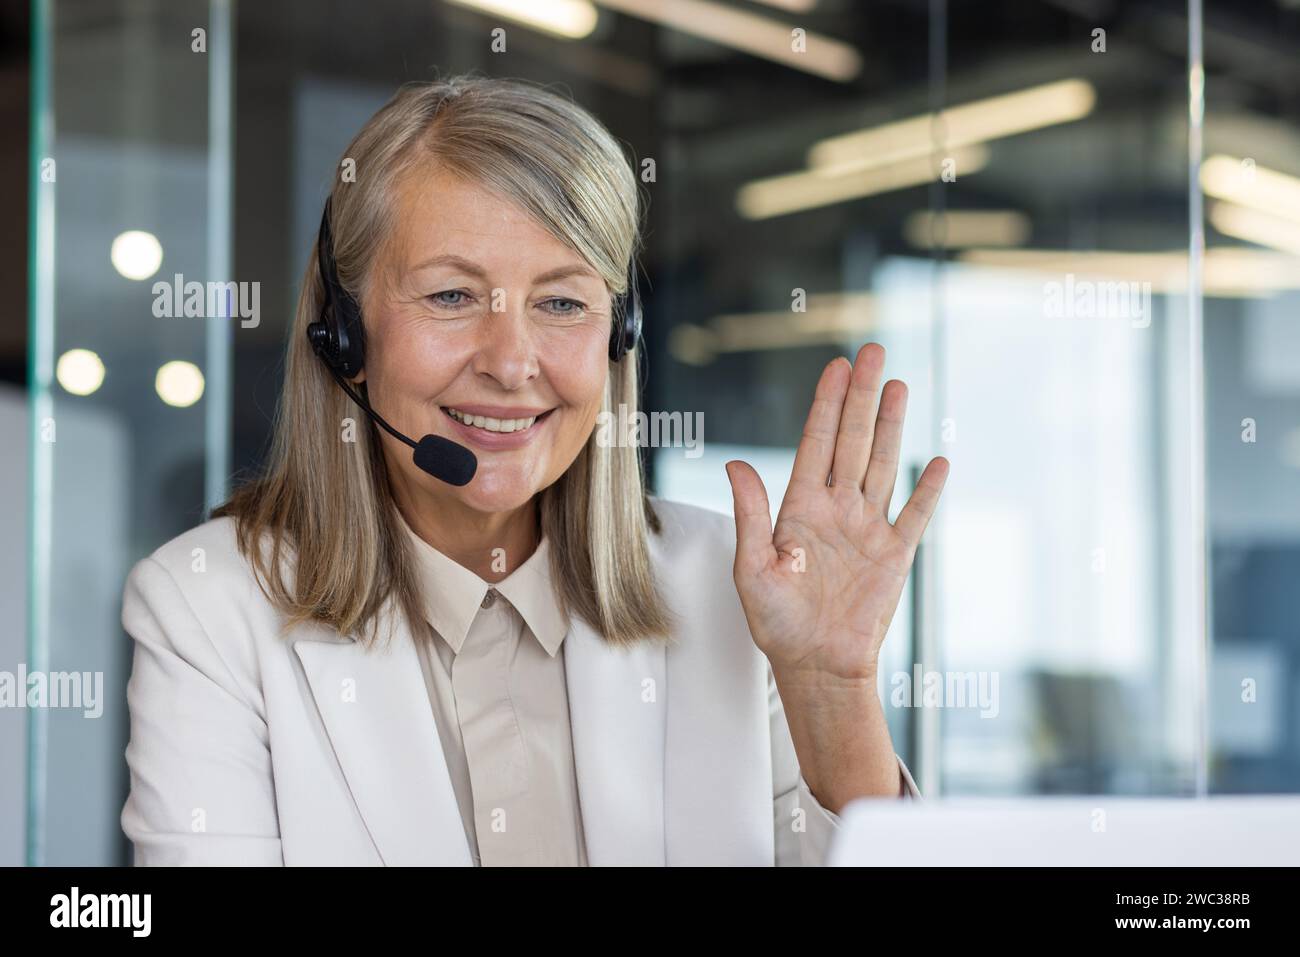 Donna matura professionale con cuffie che salutano in modo amichevole, rappresentando l'assistenza clienti e l'interazione positiva sul luogo di lavoro. Foto Stock